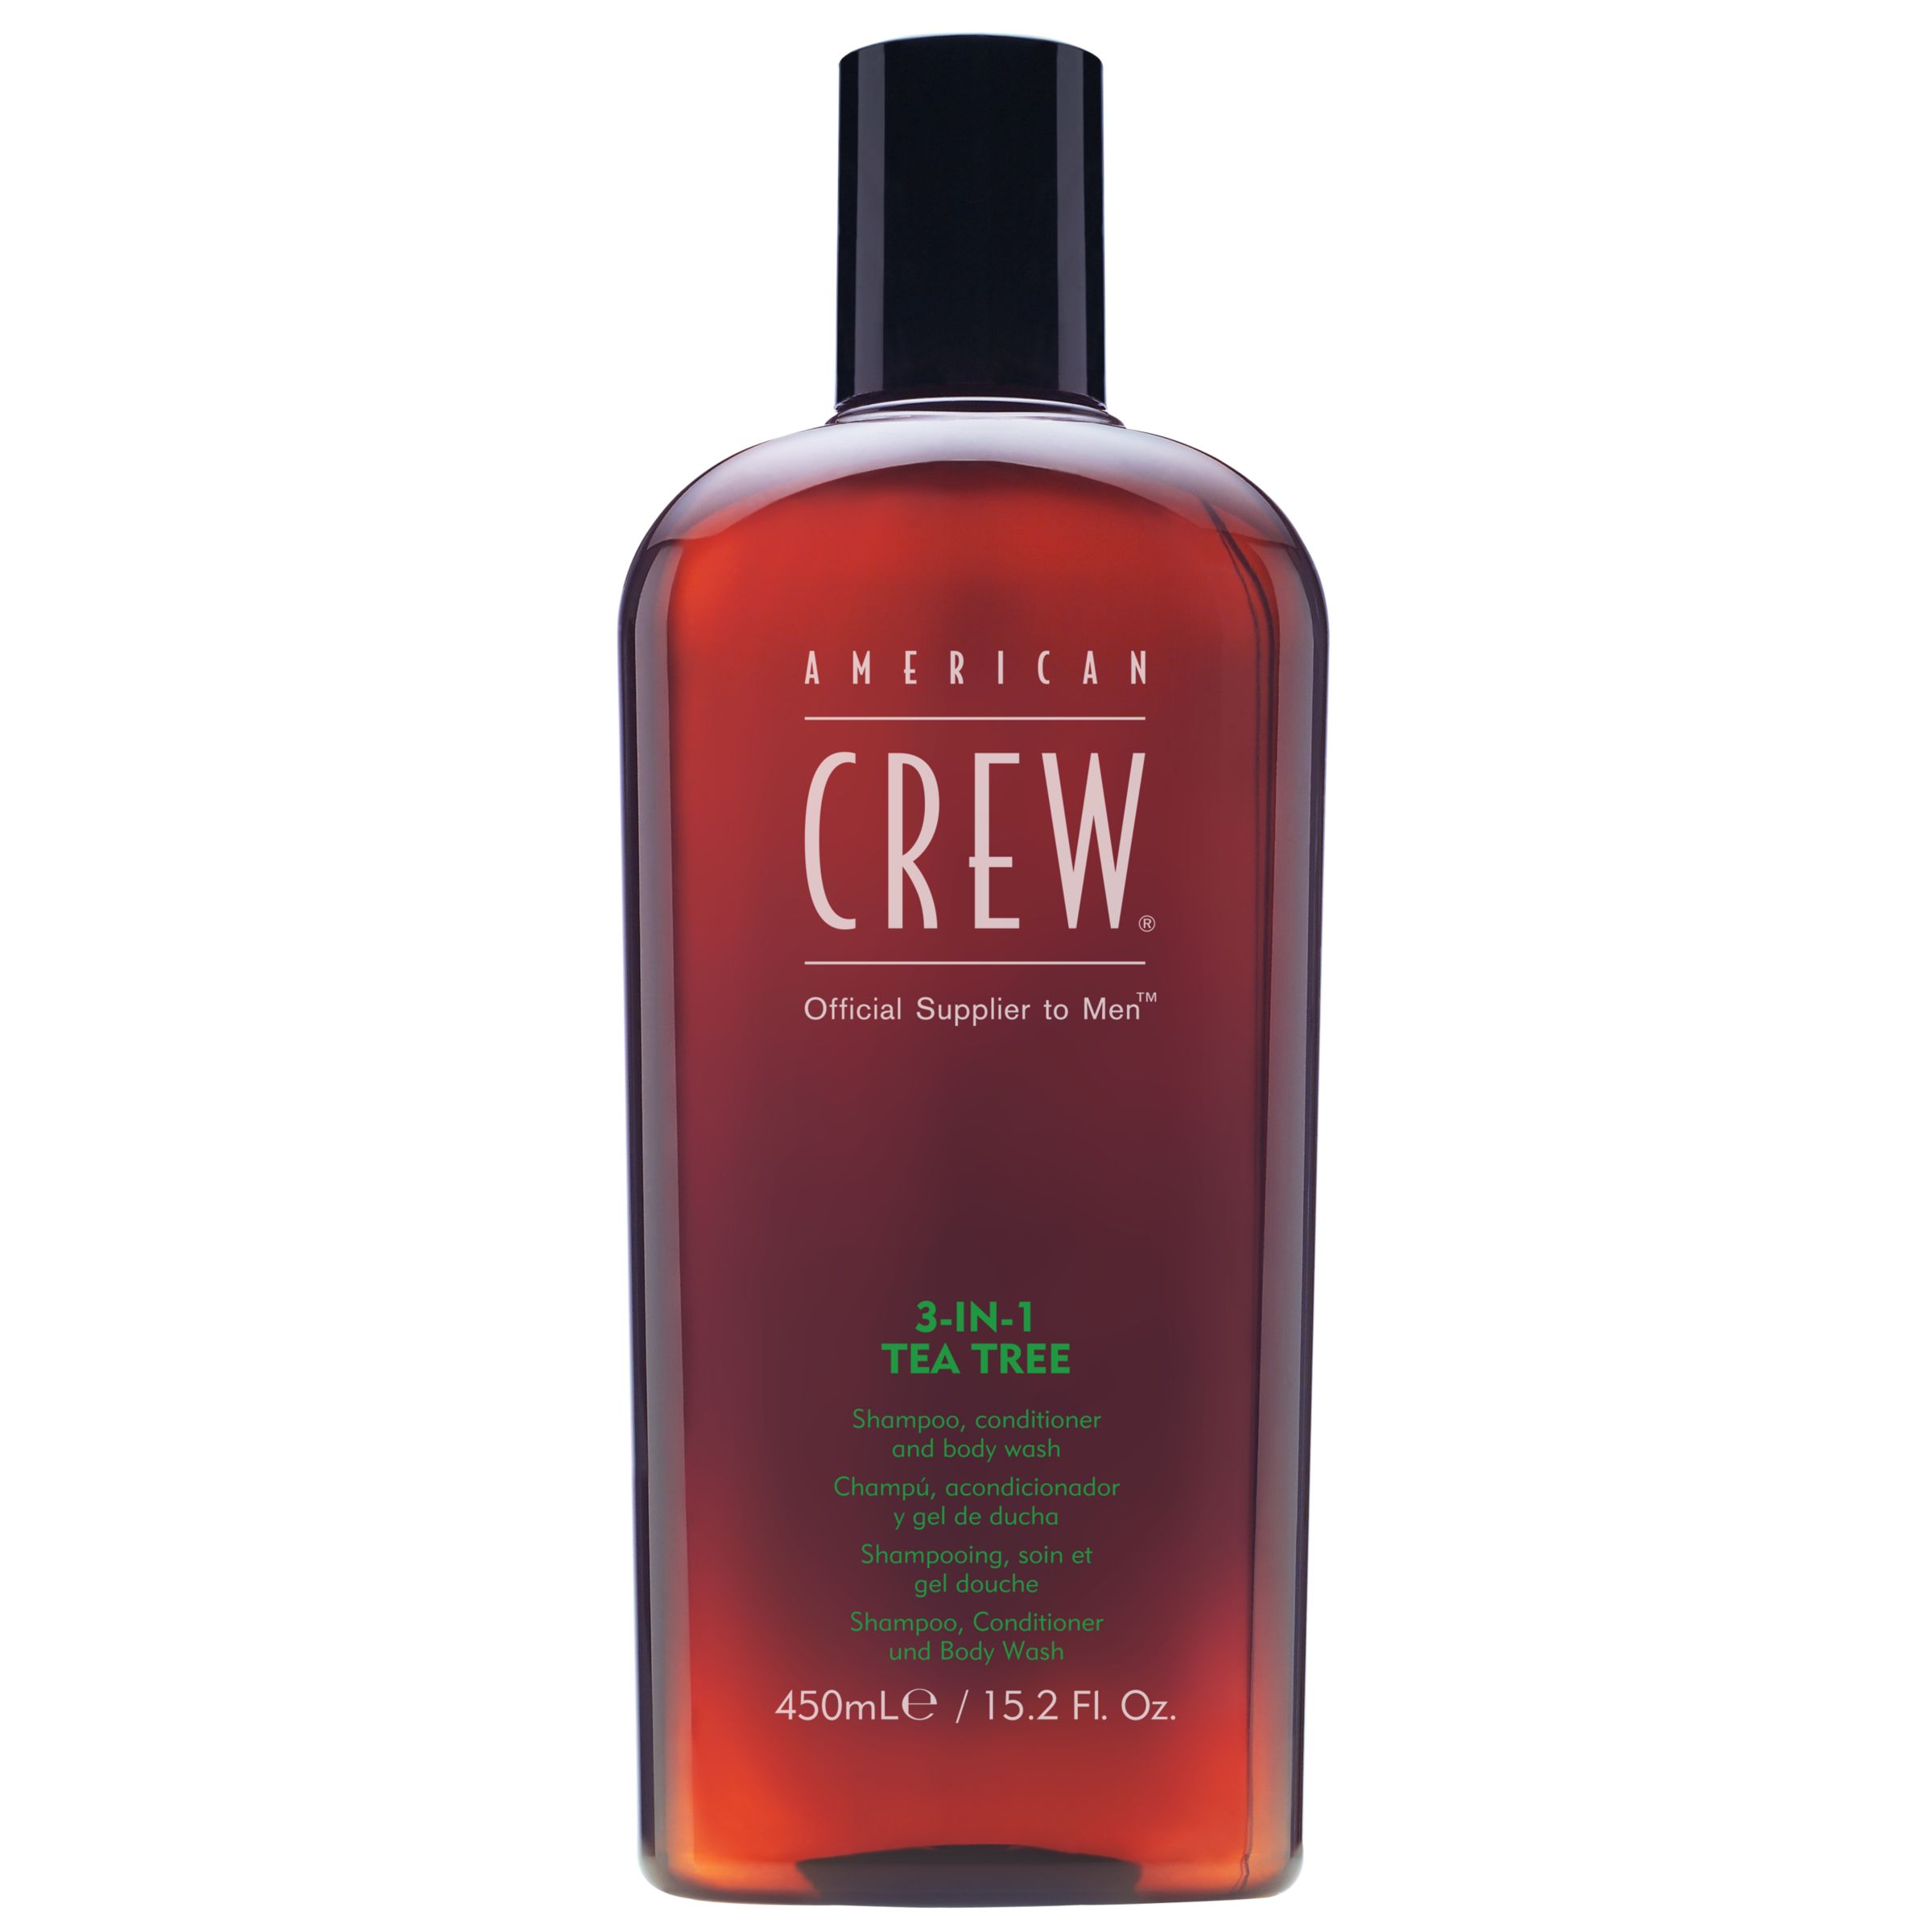 American Crew 3-In-1 Tea Tree Shampoo, Conditioner & Body Wash, 450ml